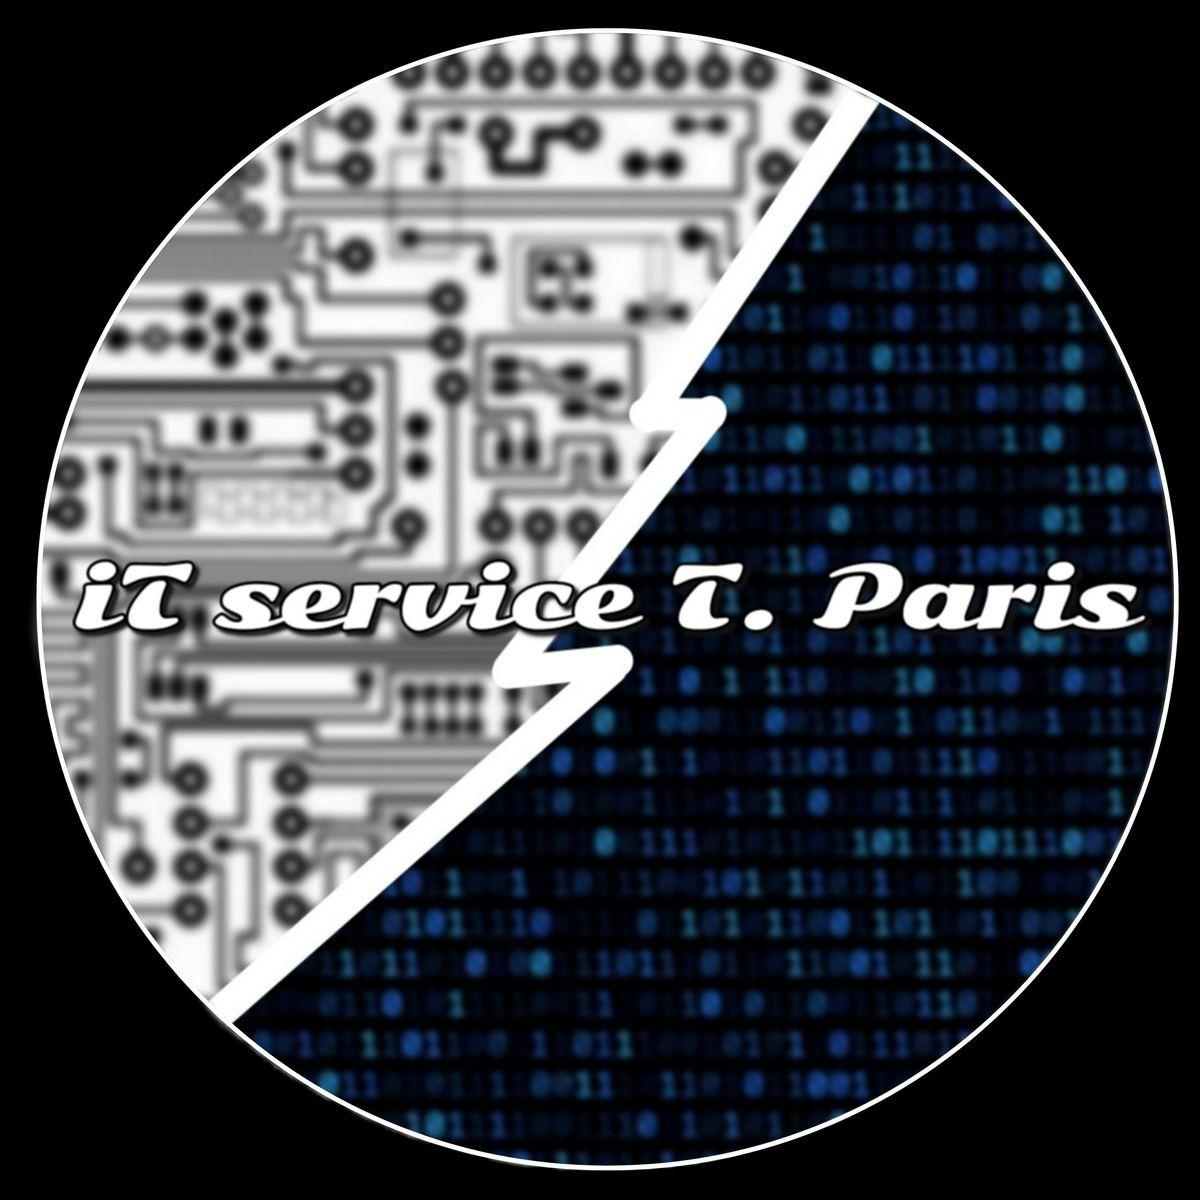 IT Service Thomas Paris